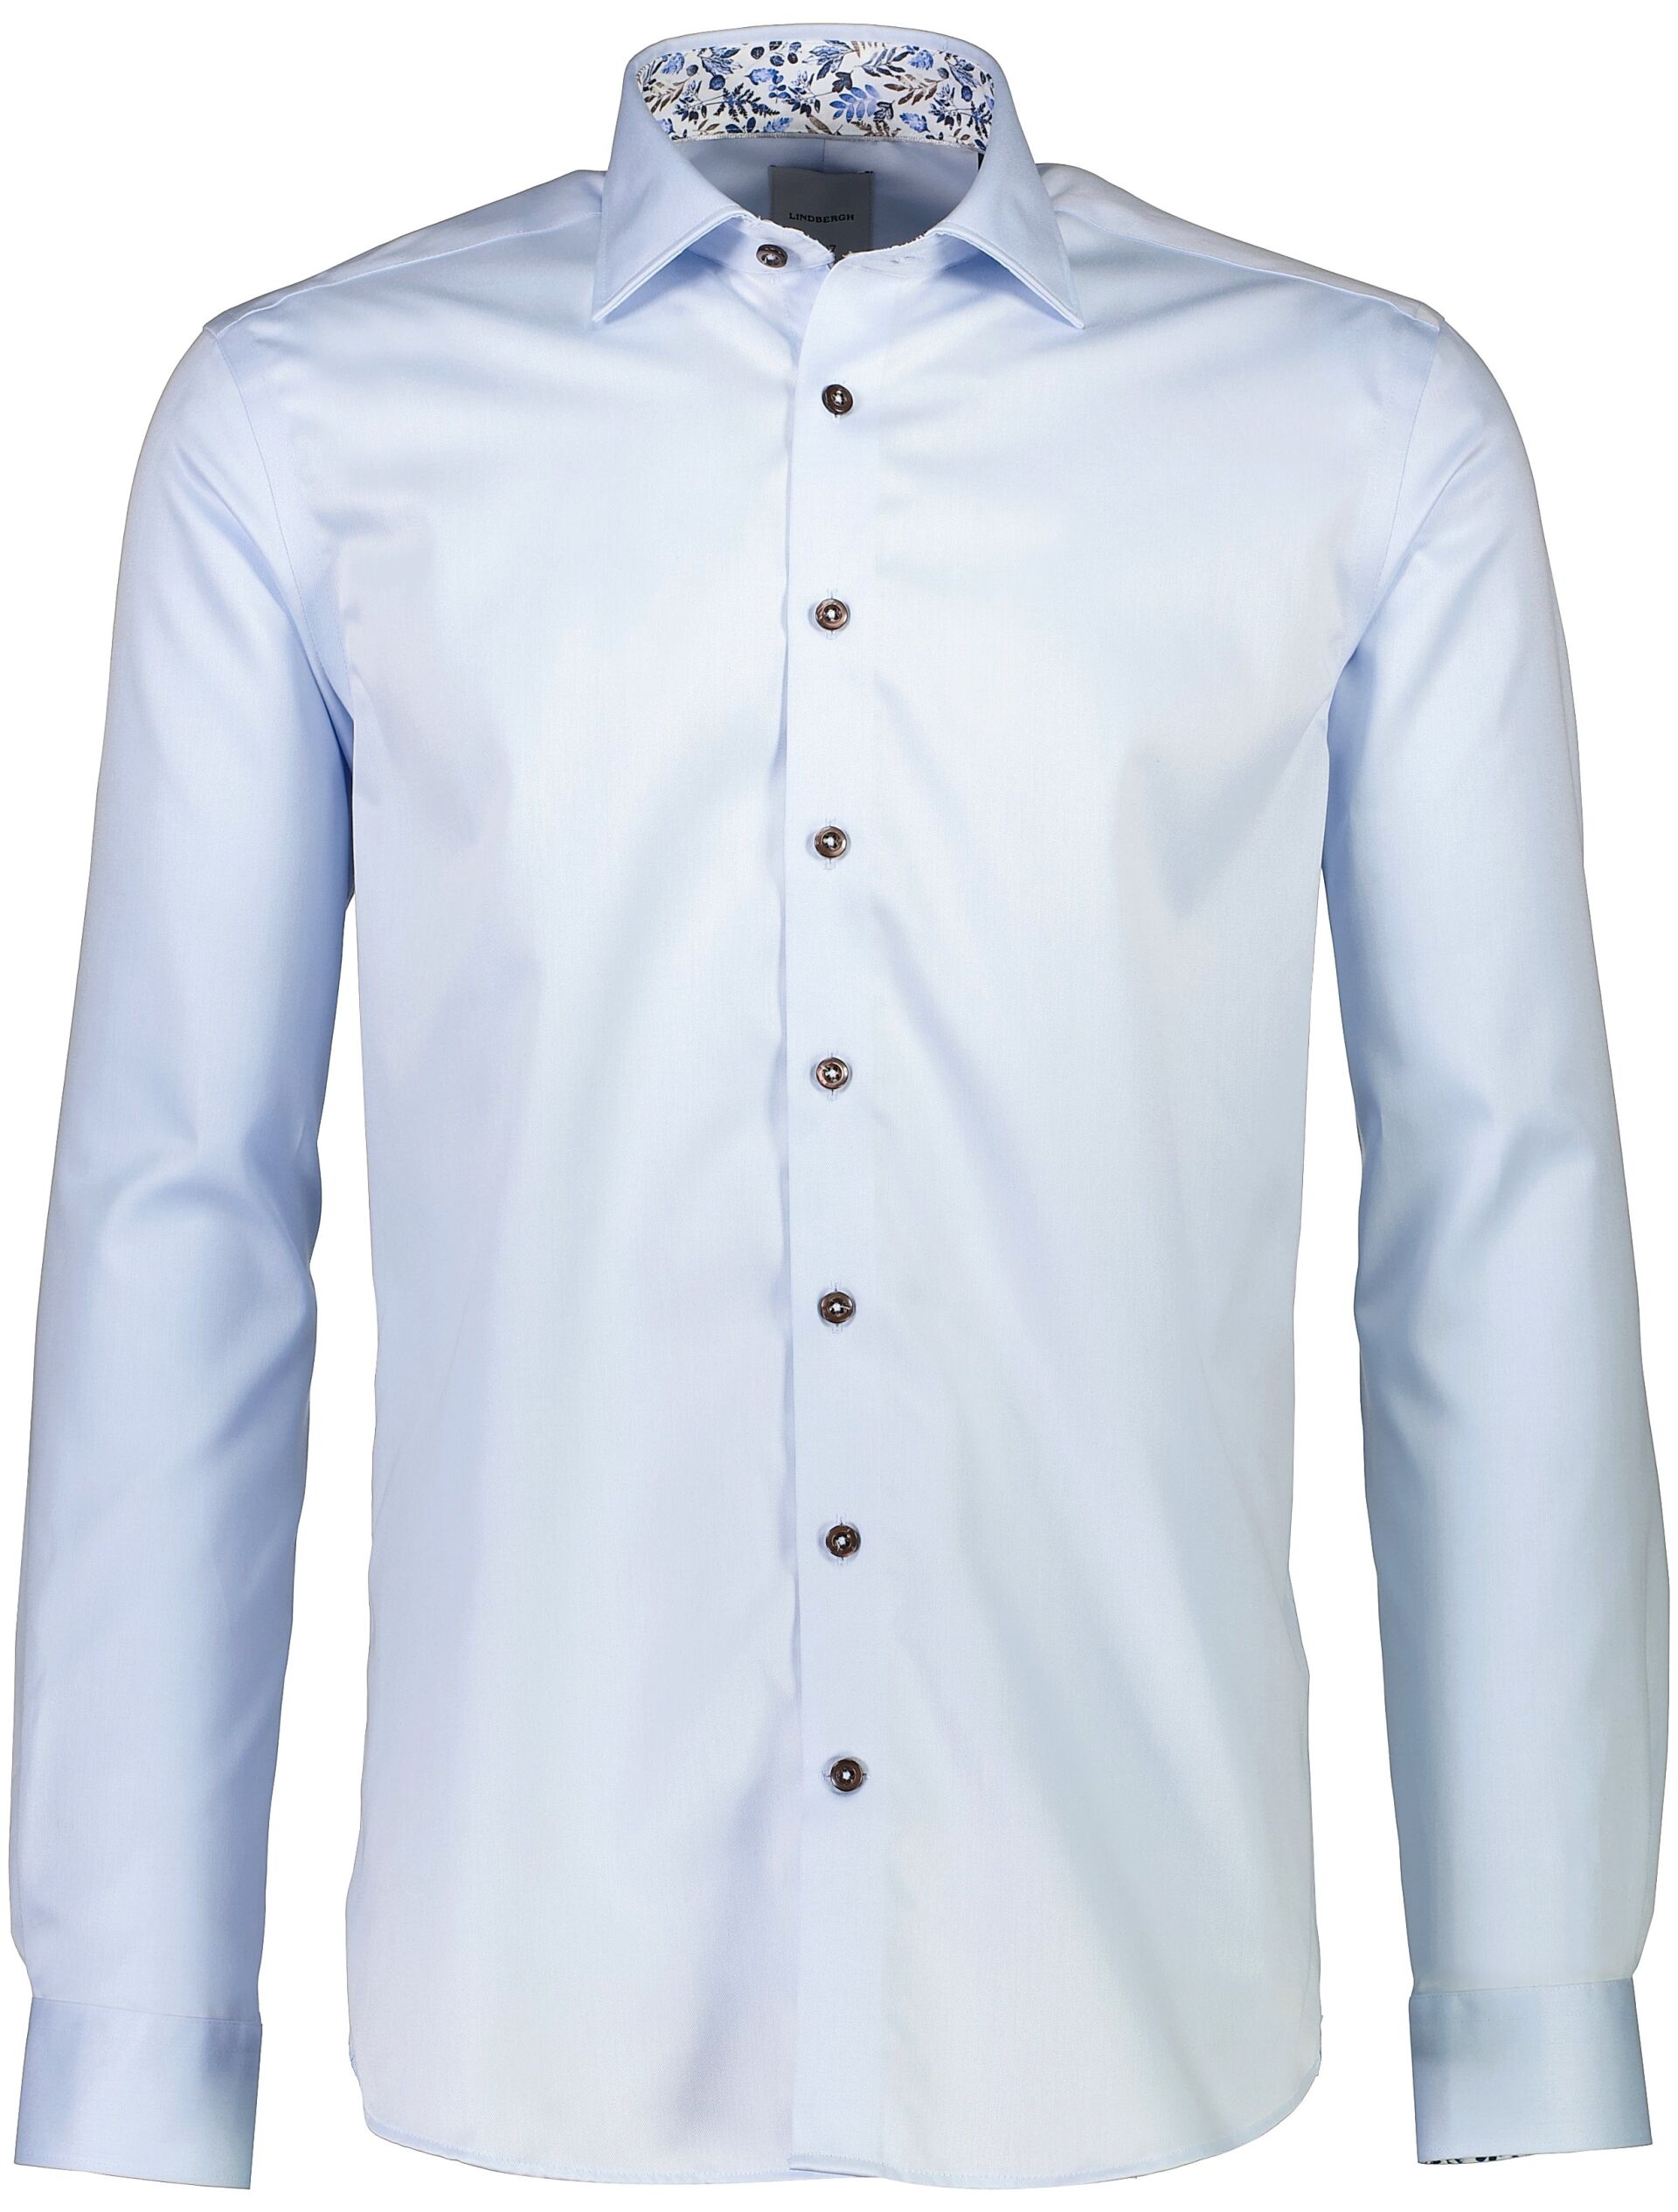 Business shirt Business shirt Blue 30-247234